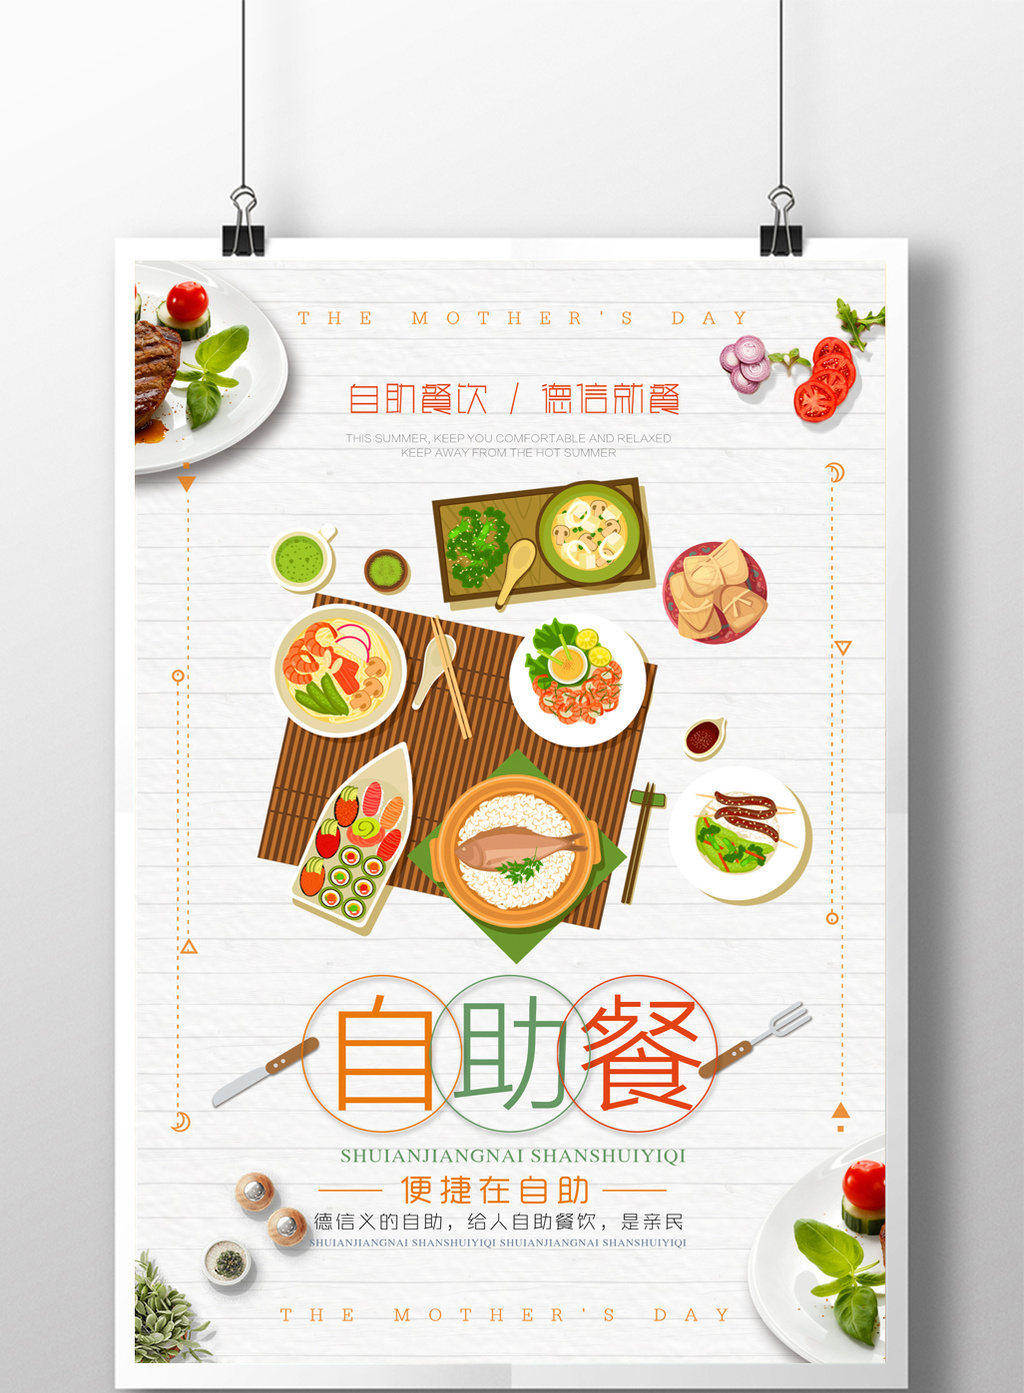 包图 广告设计 海报 > 自助餐餐饮创意海报  上传时间2017-05-27 17